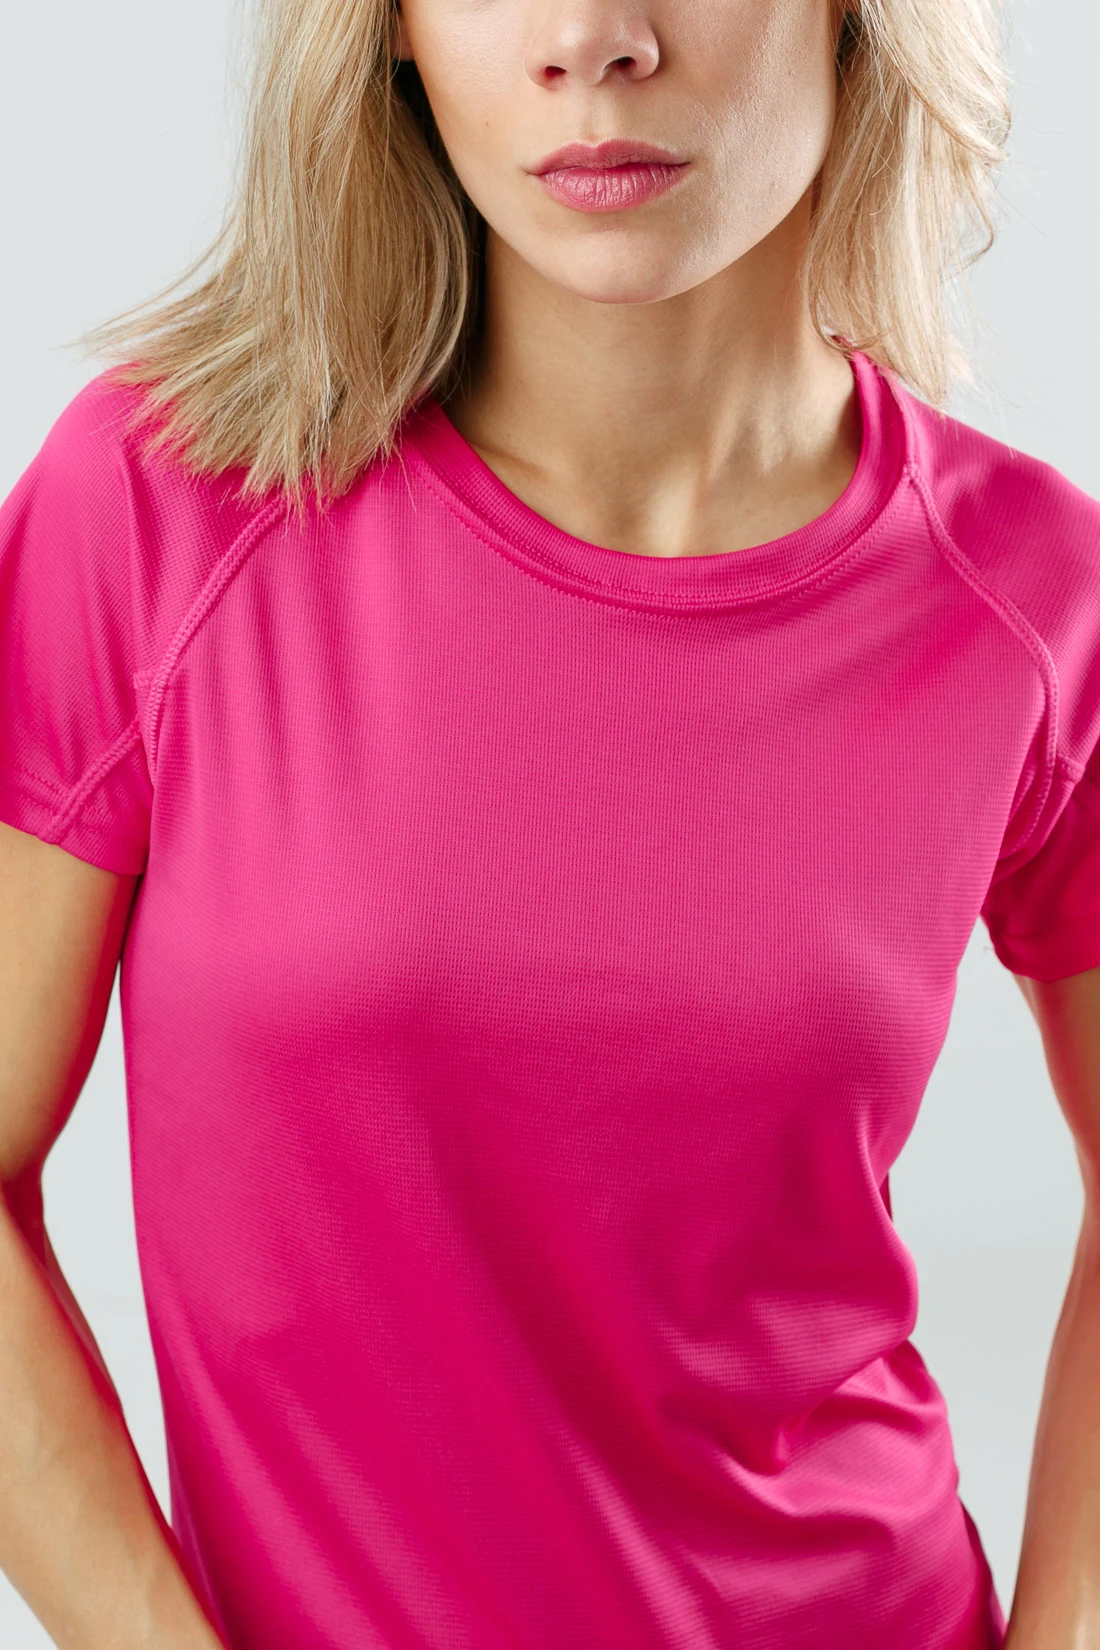 Camiseta Mita - Rosa Flúor